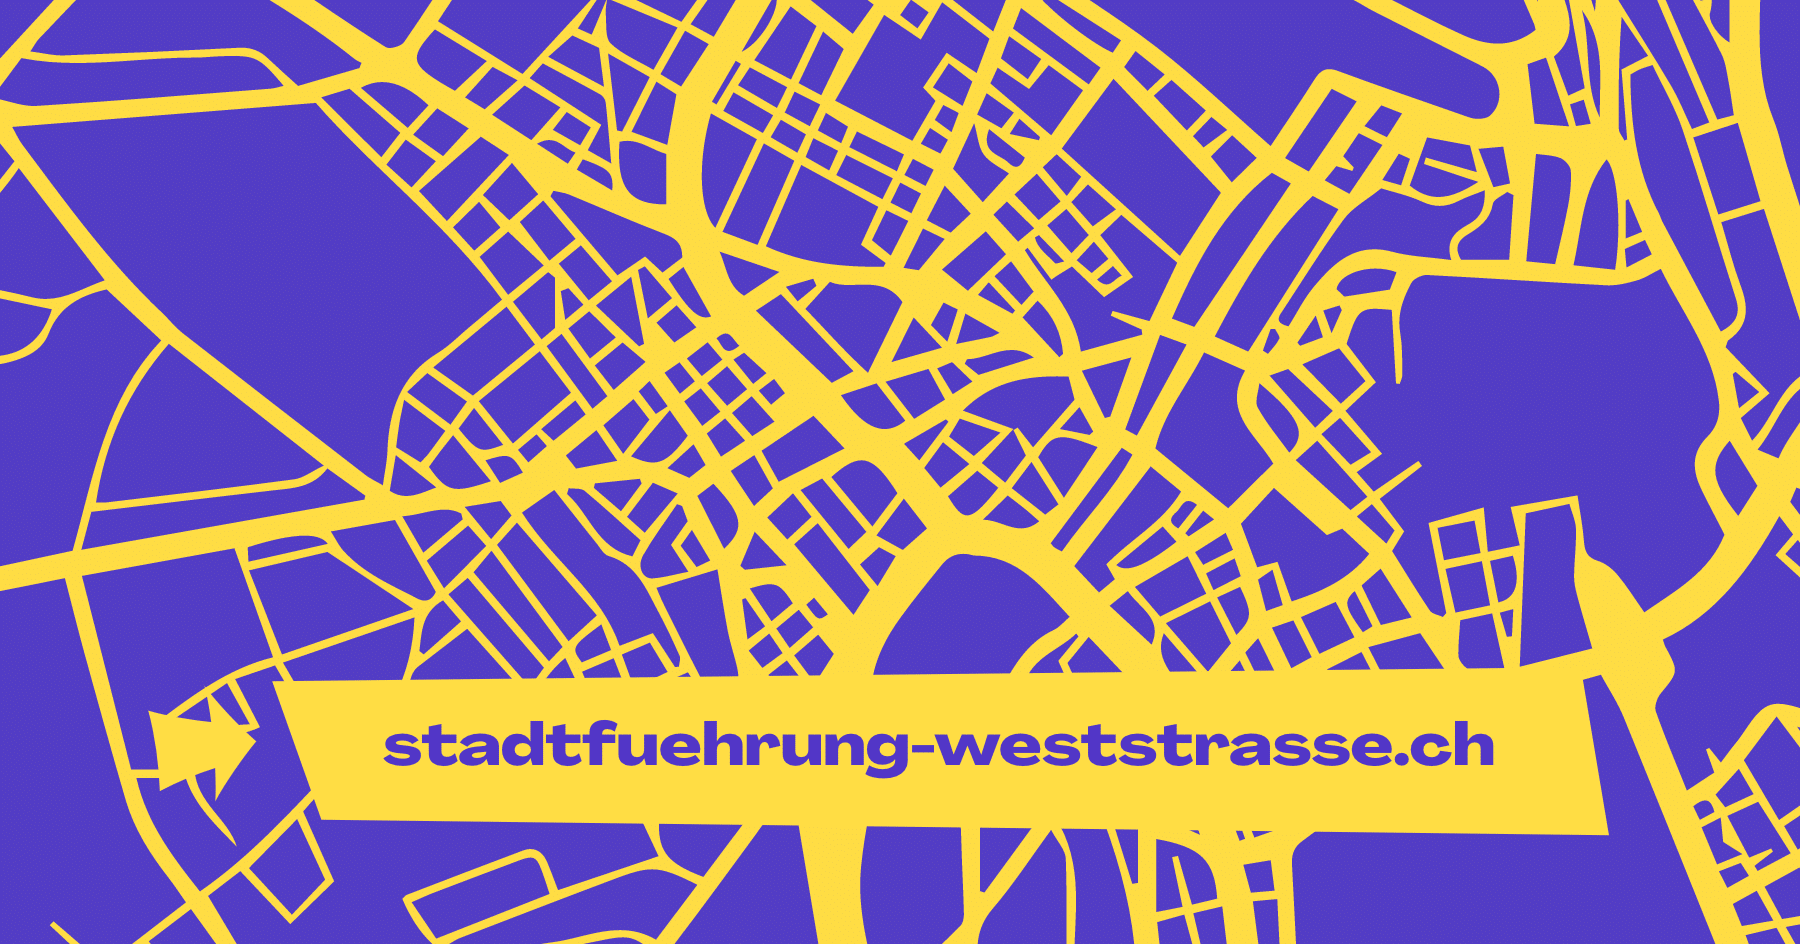 (c) Stadtfuehrung-weststrasse.ch